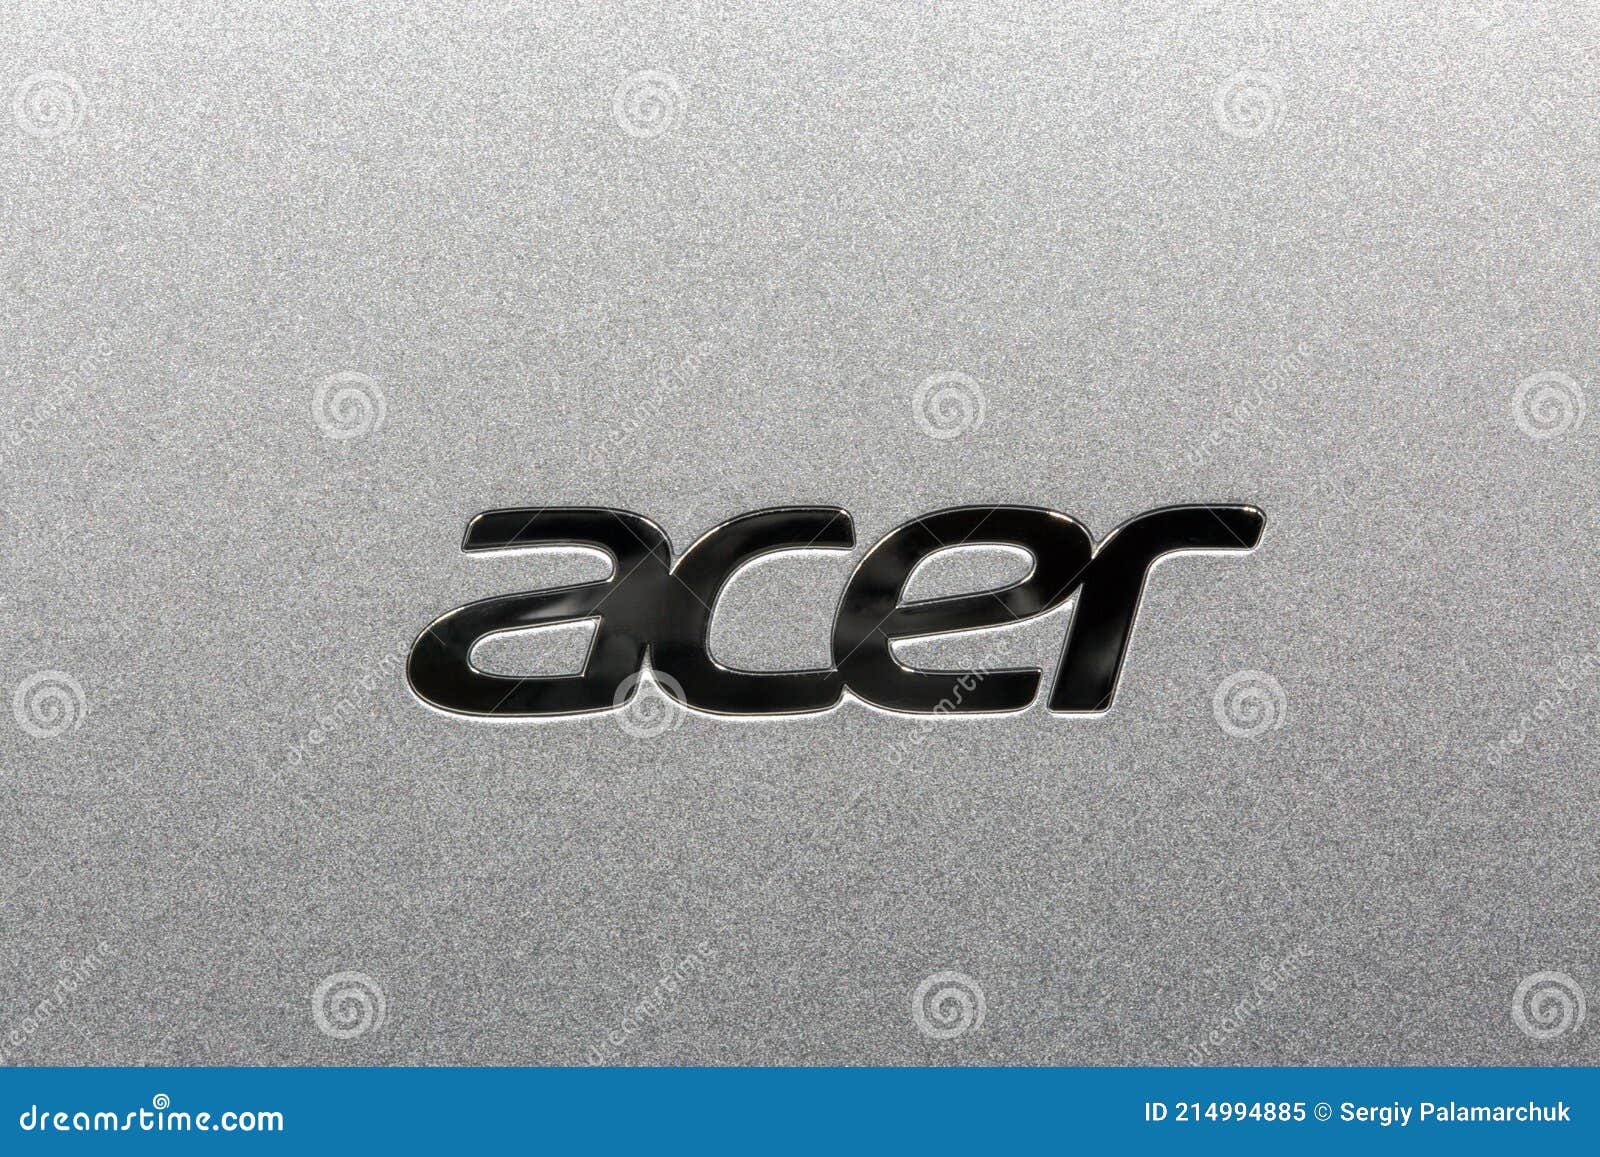 acer logo png